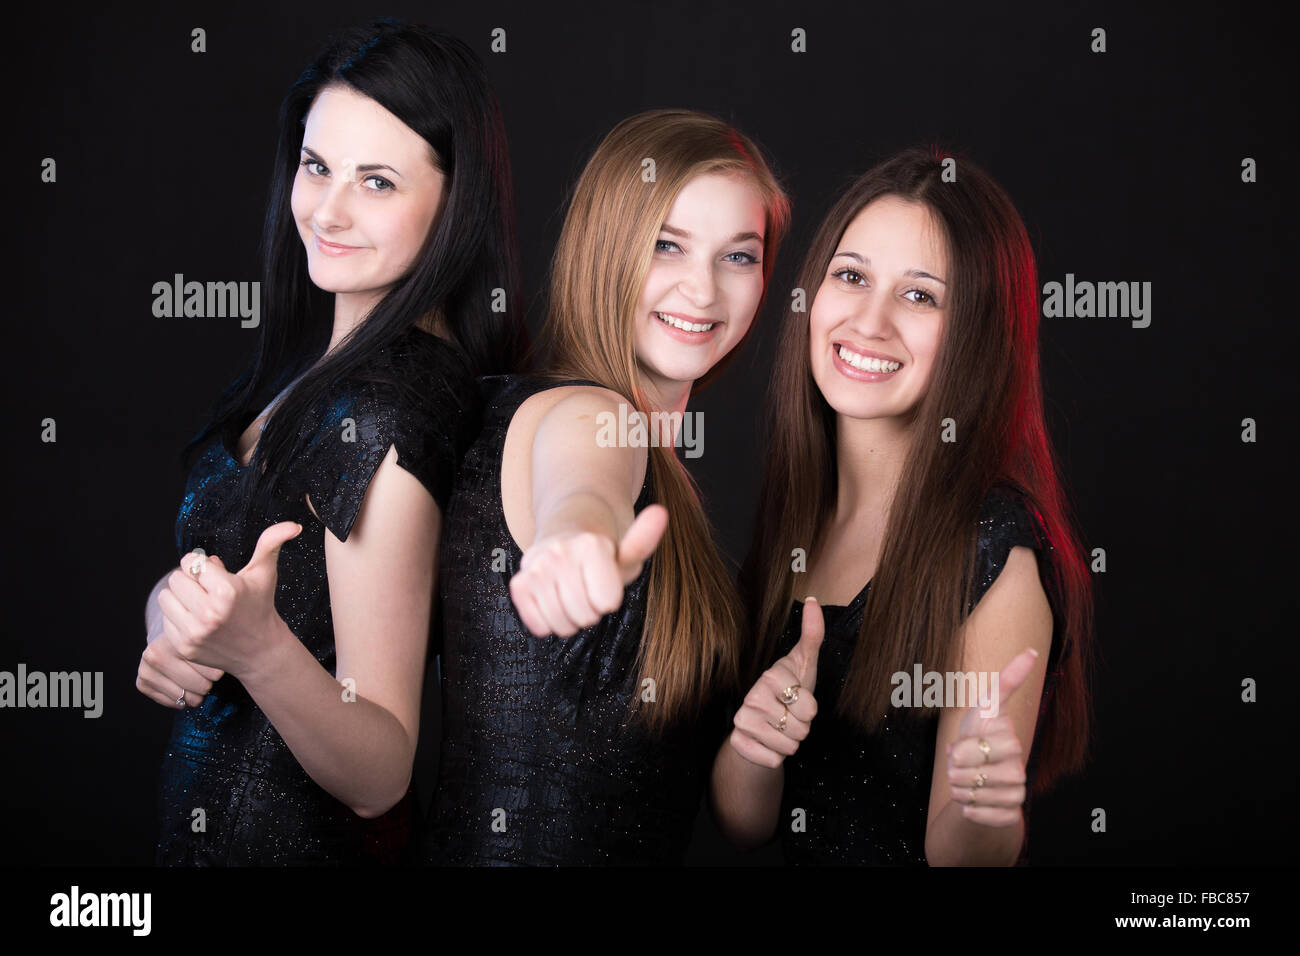 Meilleurs amis happy smiling showing Thumbs up, belles filles portrait de groupe, profitant de leur temps Banque D'Images